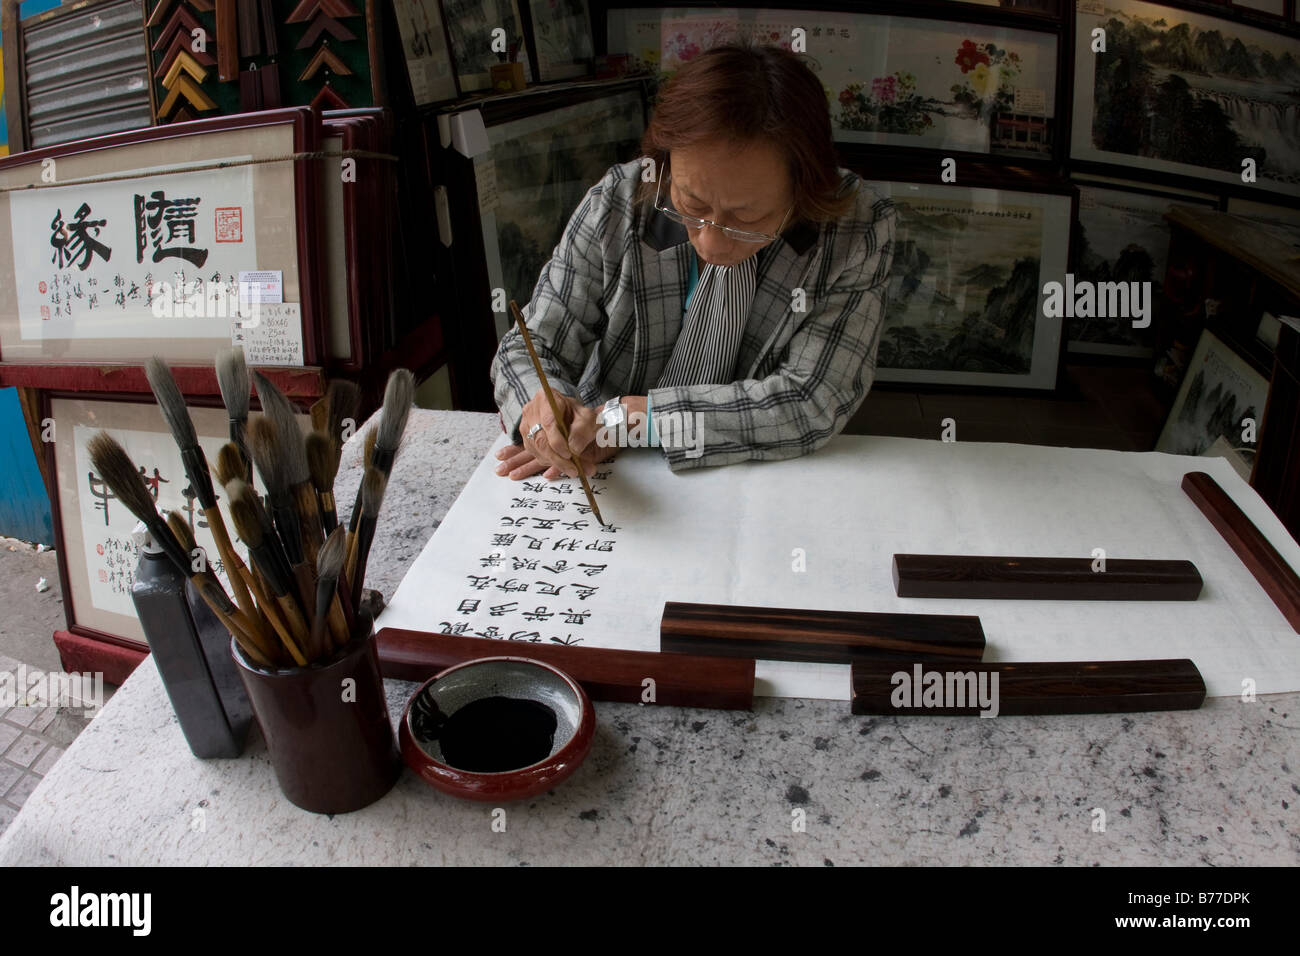 Artiest cinese e proprietario di un negozio di seduta creando un nuovo pezzo di illustrazioni utilizzando la calligrafia cinese Canton Guangzhou Guangdong Cina Foto Stock